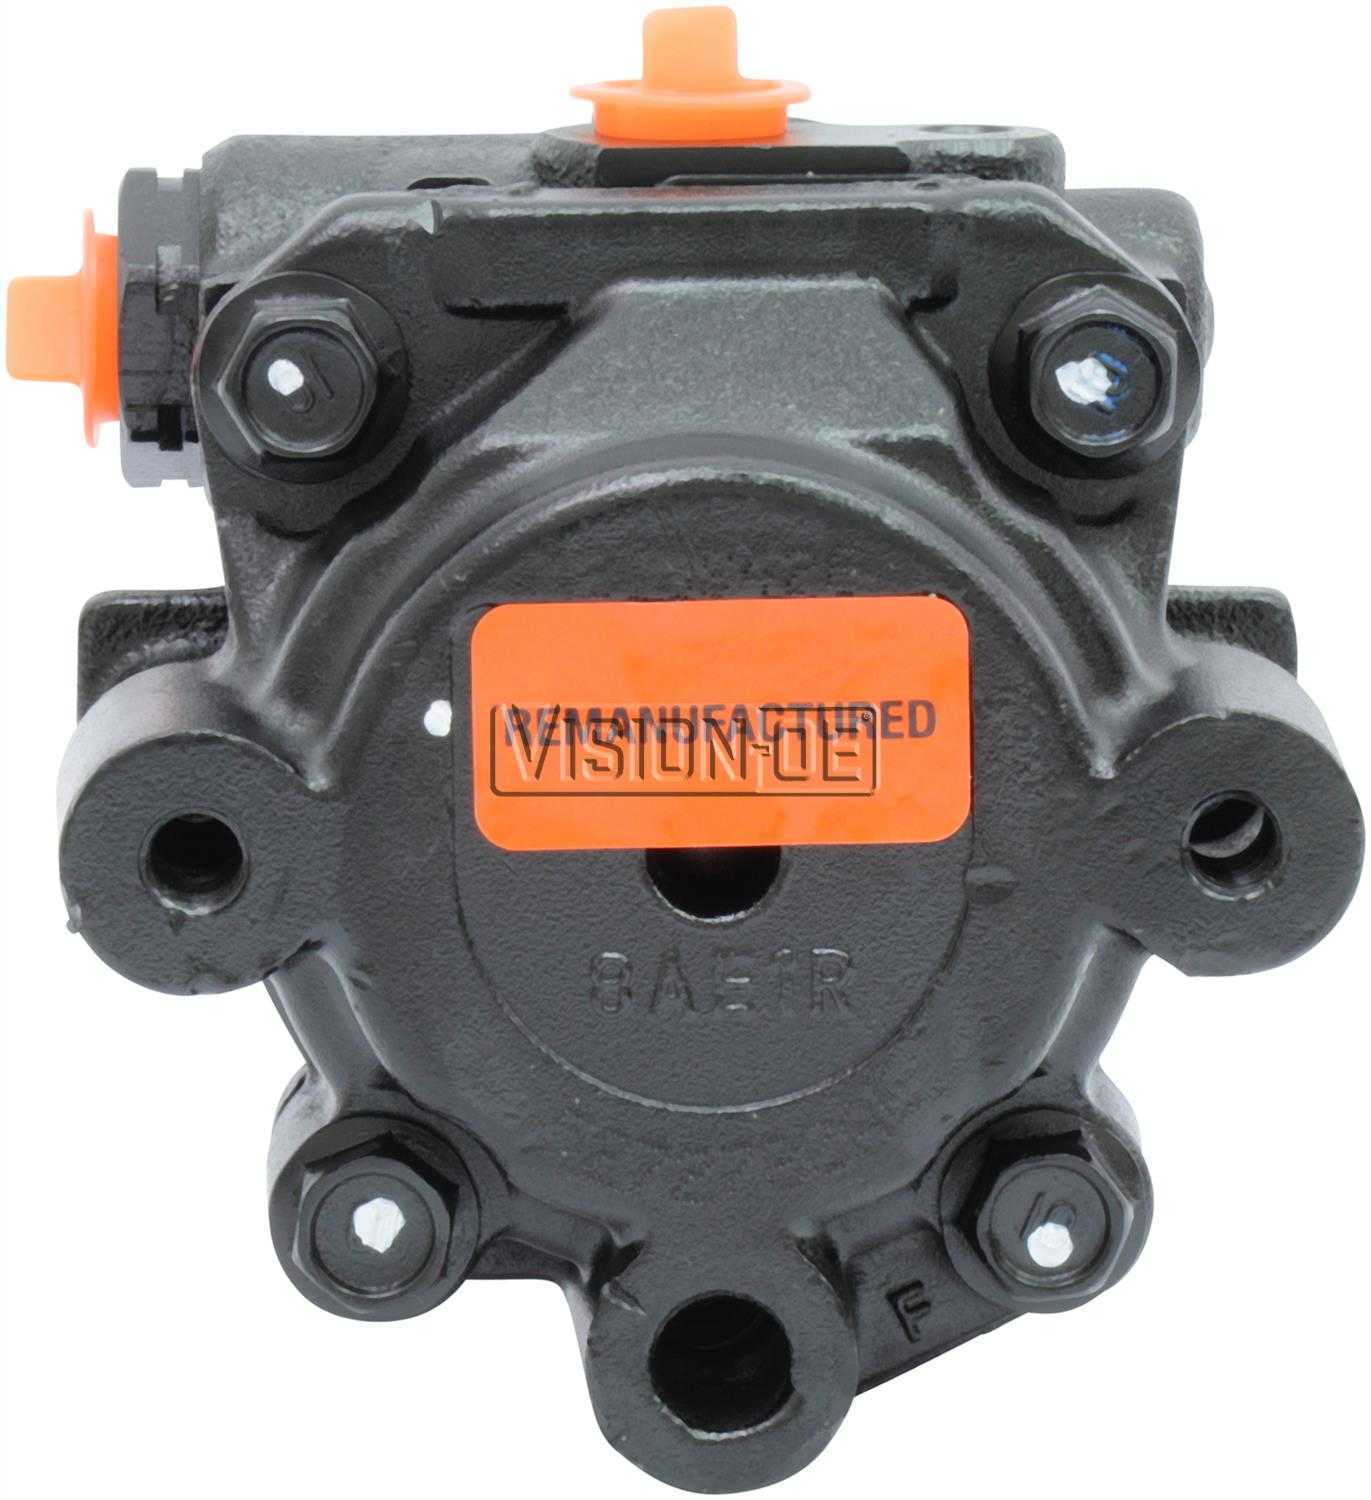 VISION-OE - Reman Power Steering Pump - VOE 920-0111